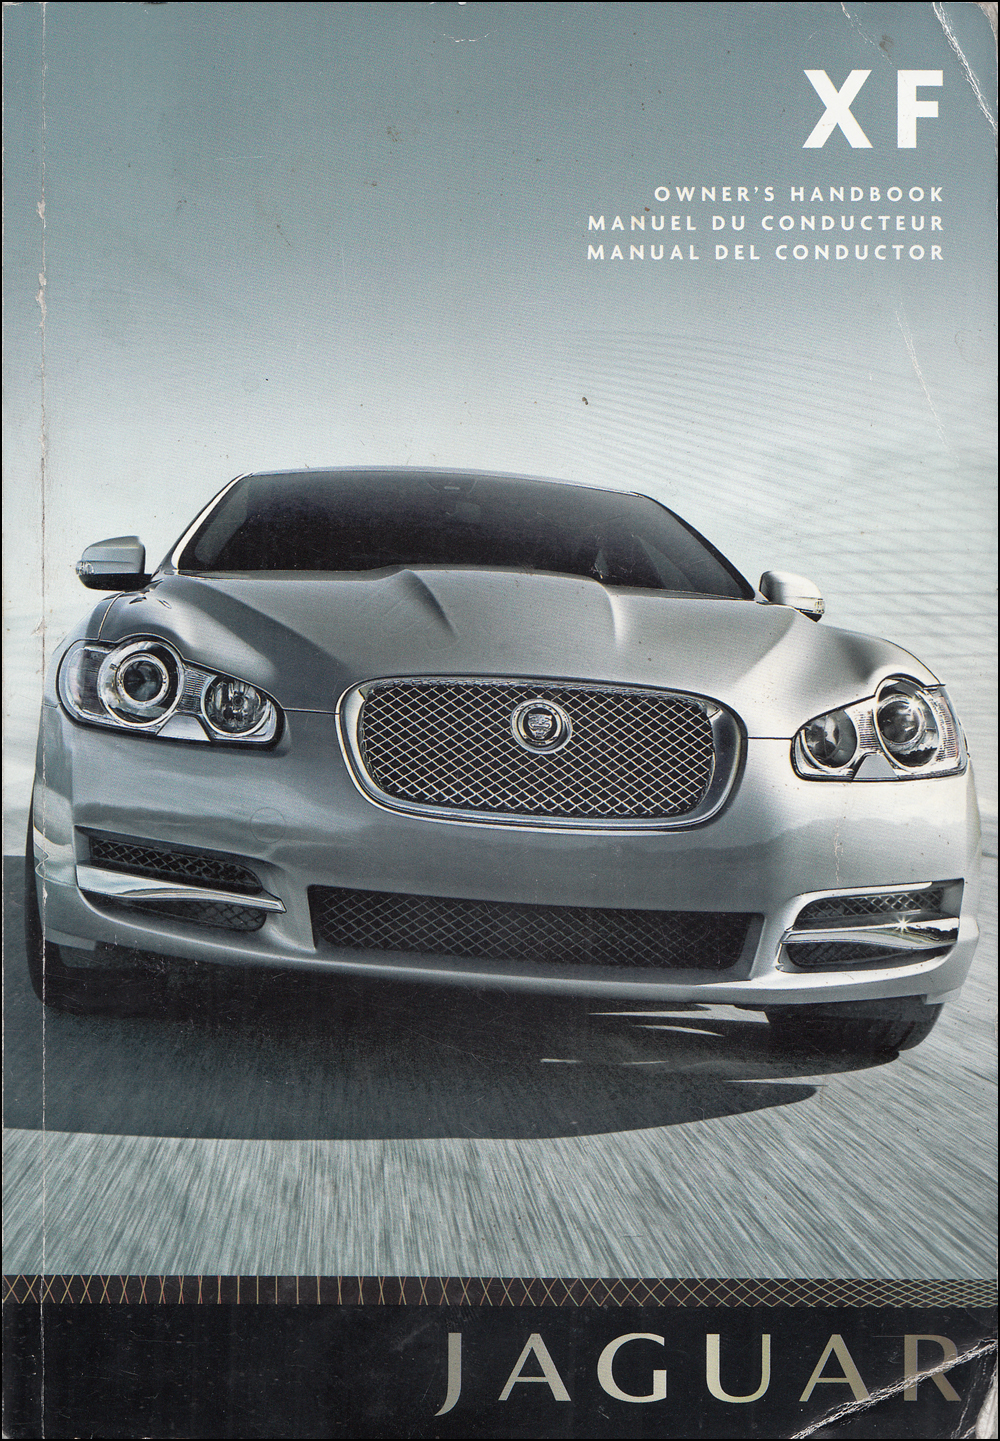 2008- early 2009 Jaguar XF Owners Manual Original